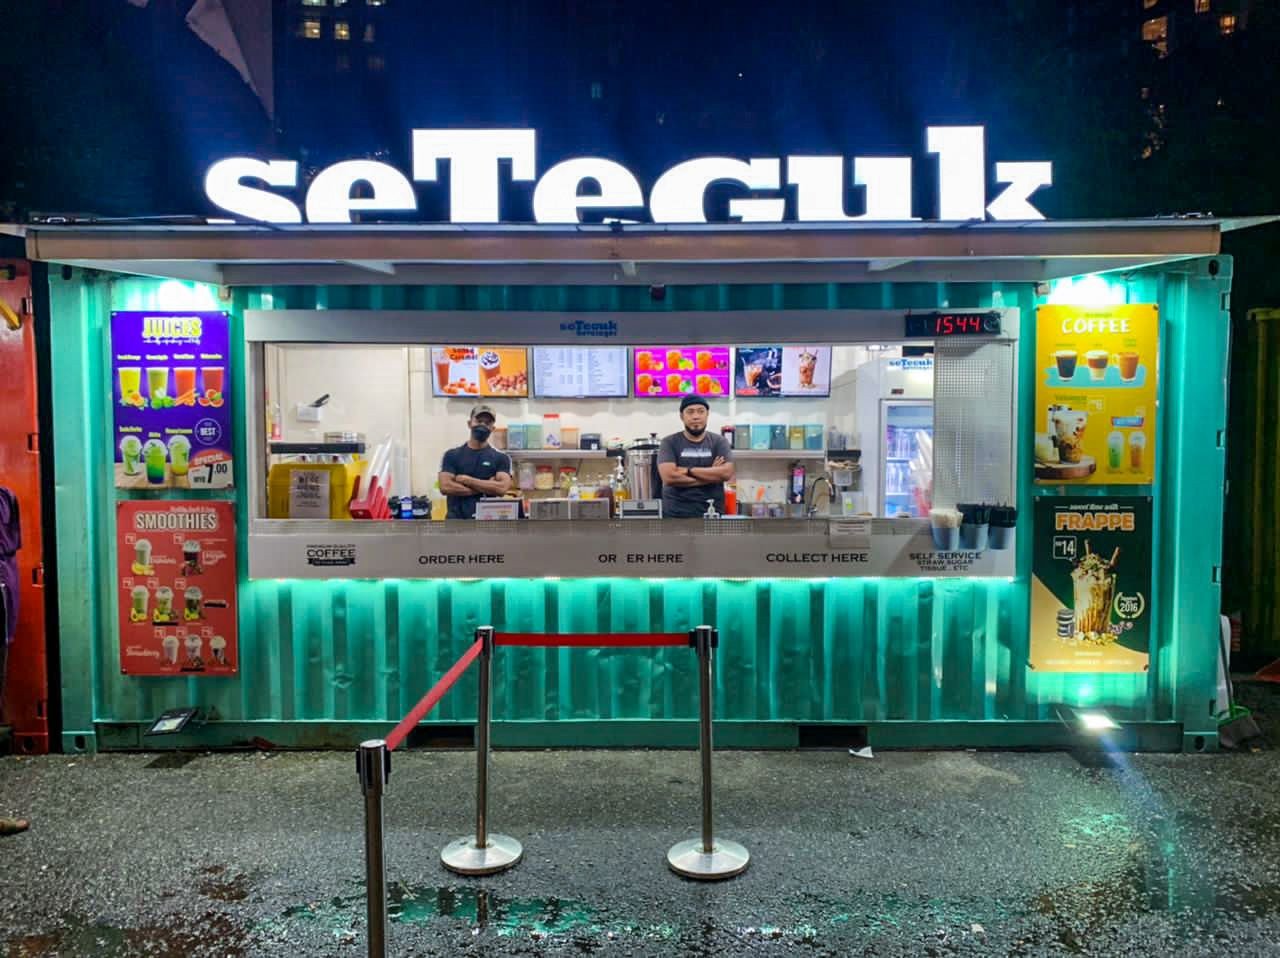 Cawangan SeTeguk yang baru diusahakan bagi memberi pilihan minuman kepada pelanggannya, yang terletak di Tapak Kuala Lumpur serta Cyberjaya.